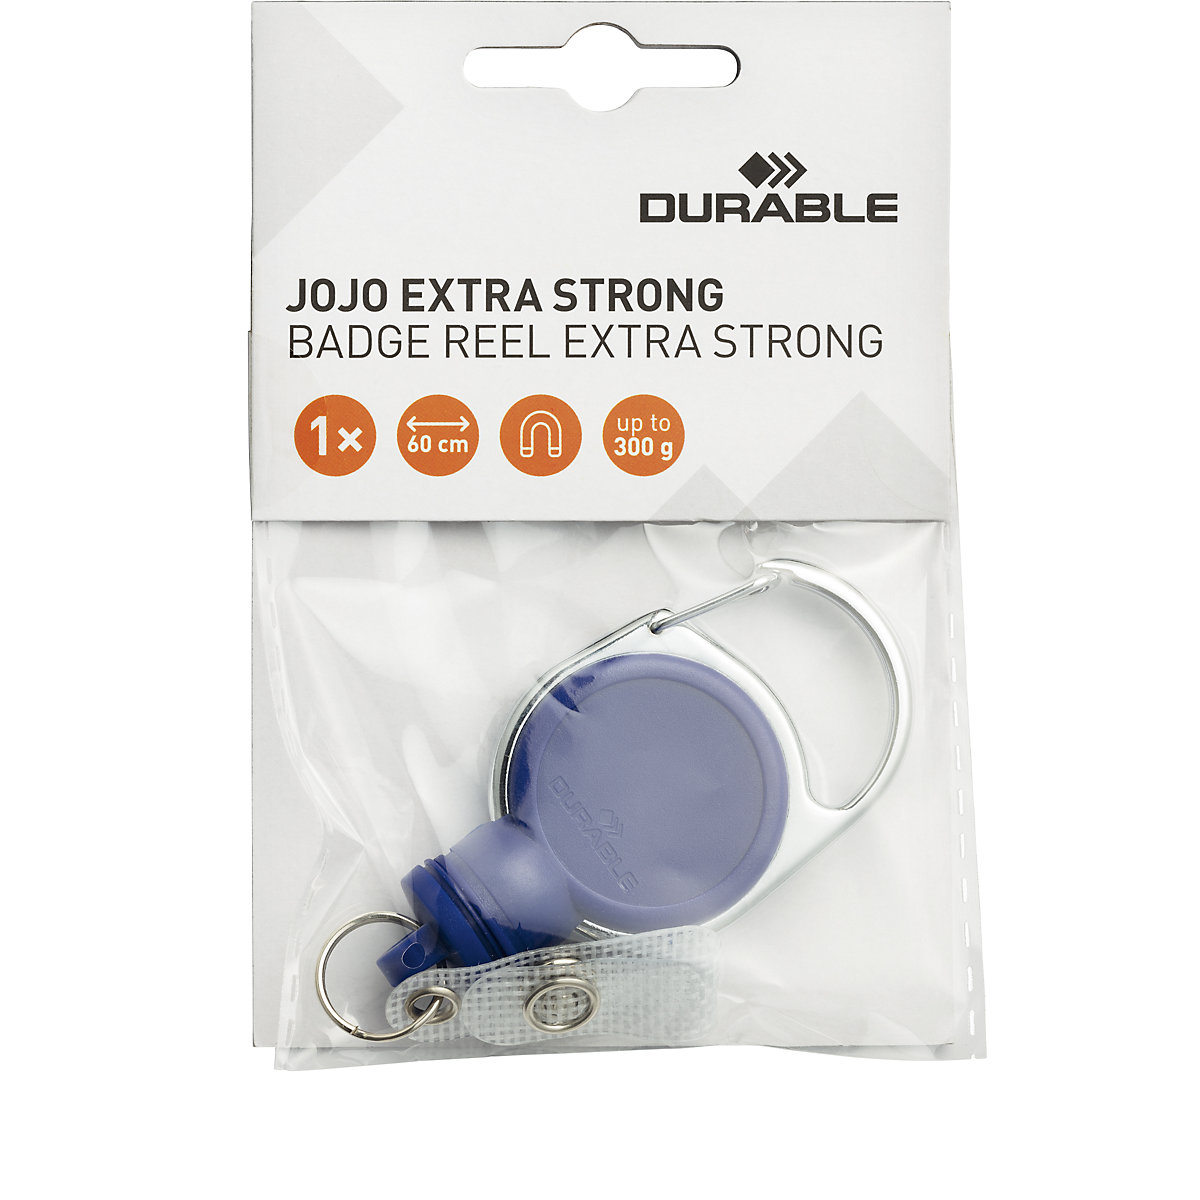 Porta-acreditación JOJO EXTRA STRONG – DURABLE (Imagen del producto 2)-1